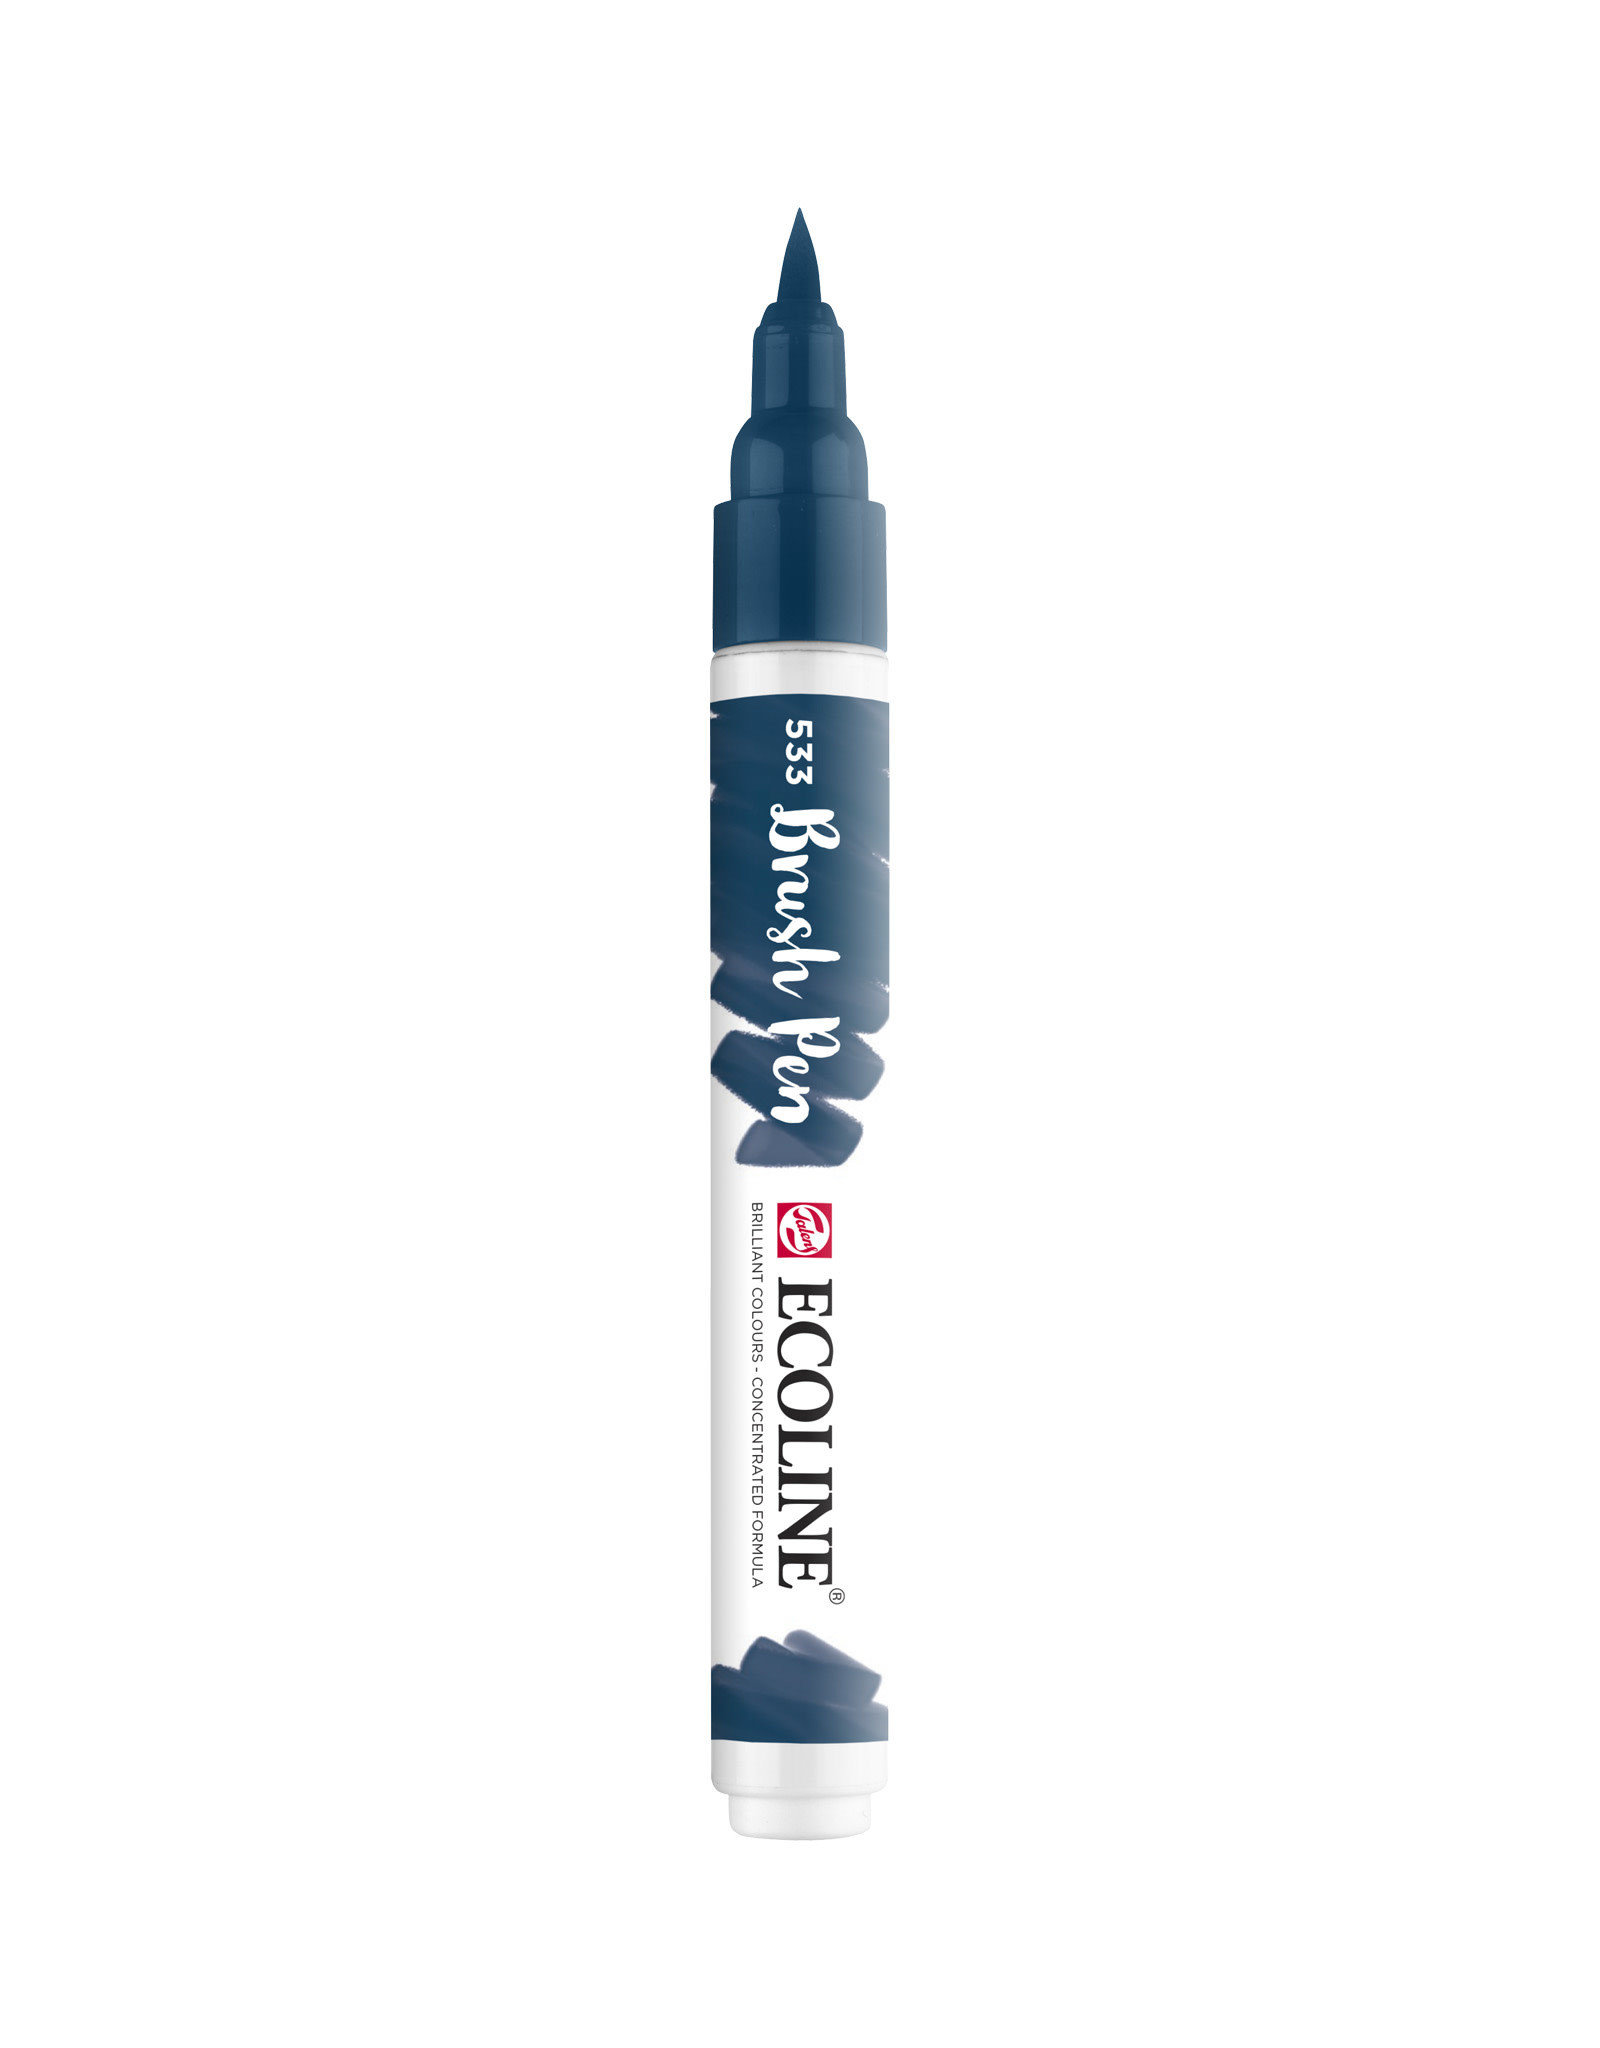 Royal Talens Ecoline Watercolour Brush Pen, Indigo